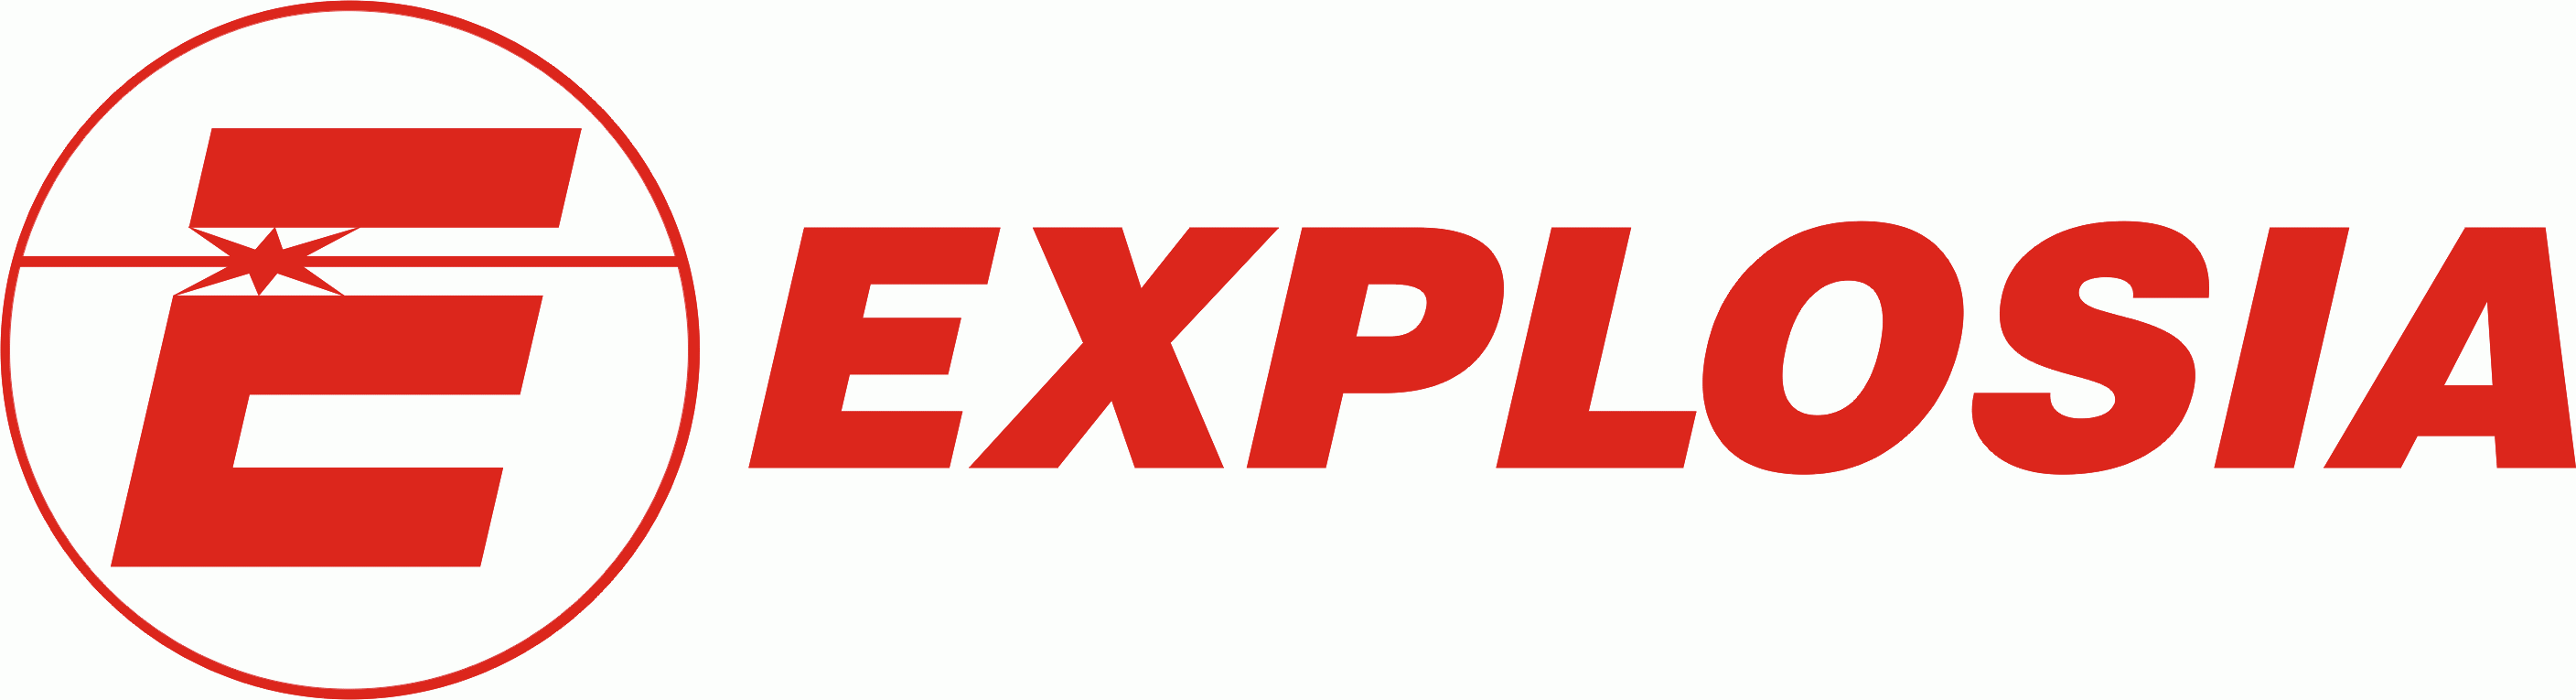 ÚVOD Reloadingový manuál bezdýmných prachů LOVEX pro munici se středovým zápalem byl vytvořen akciovou společností EXPLOSIA.